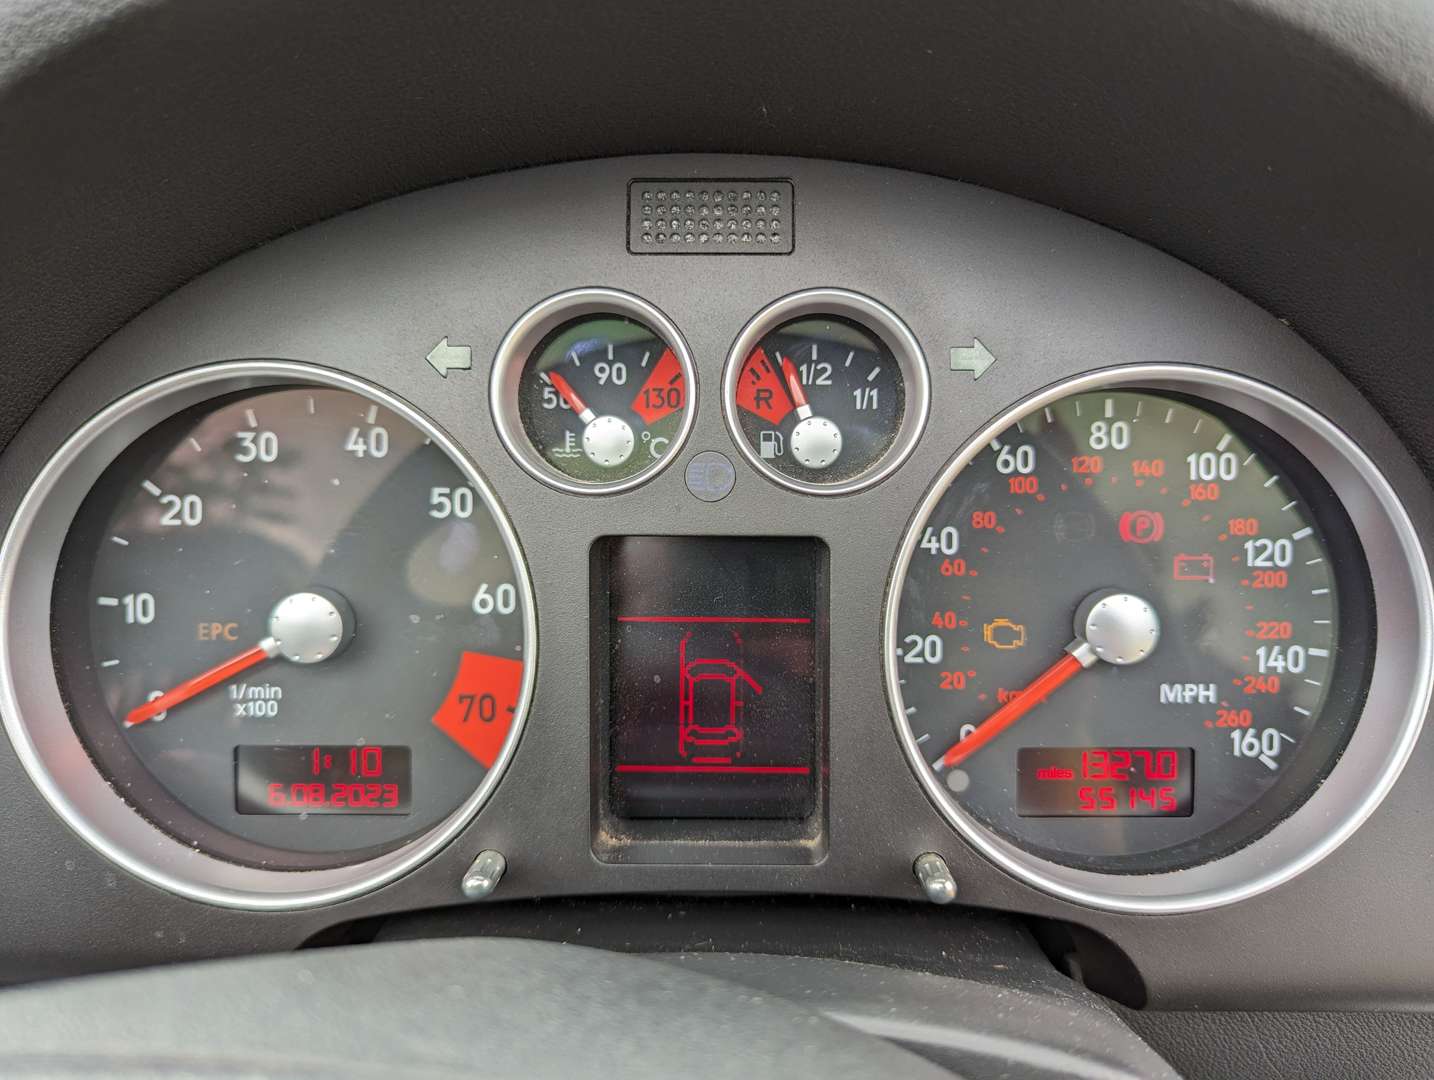 <p>2003 AUDI TT ROADSTER (150 BHP)</p>